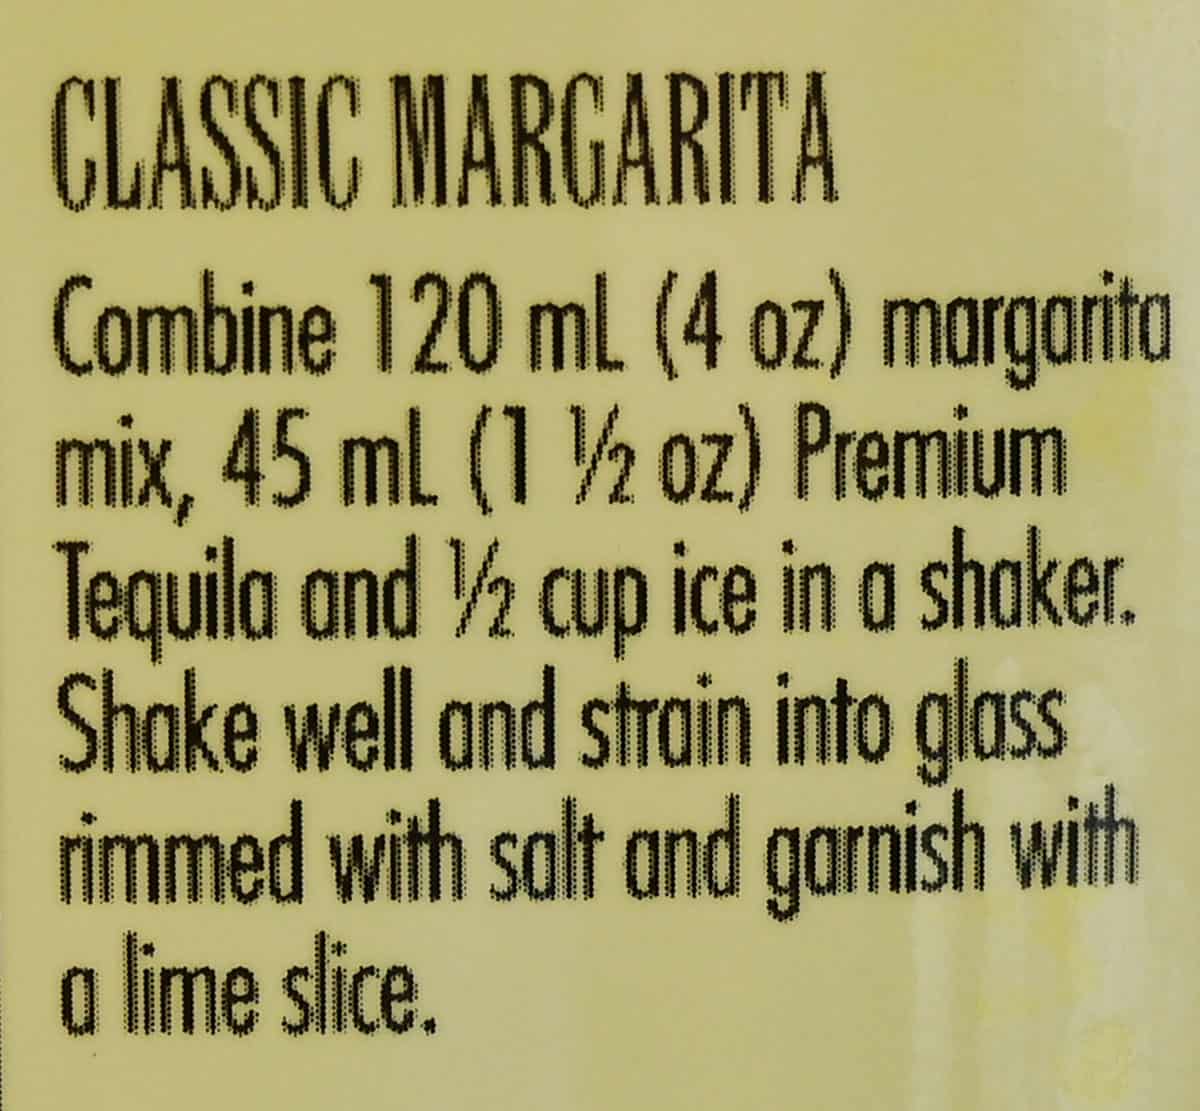 Classic margarita recipe using mix from label.